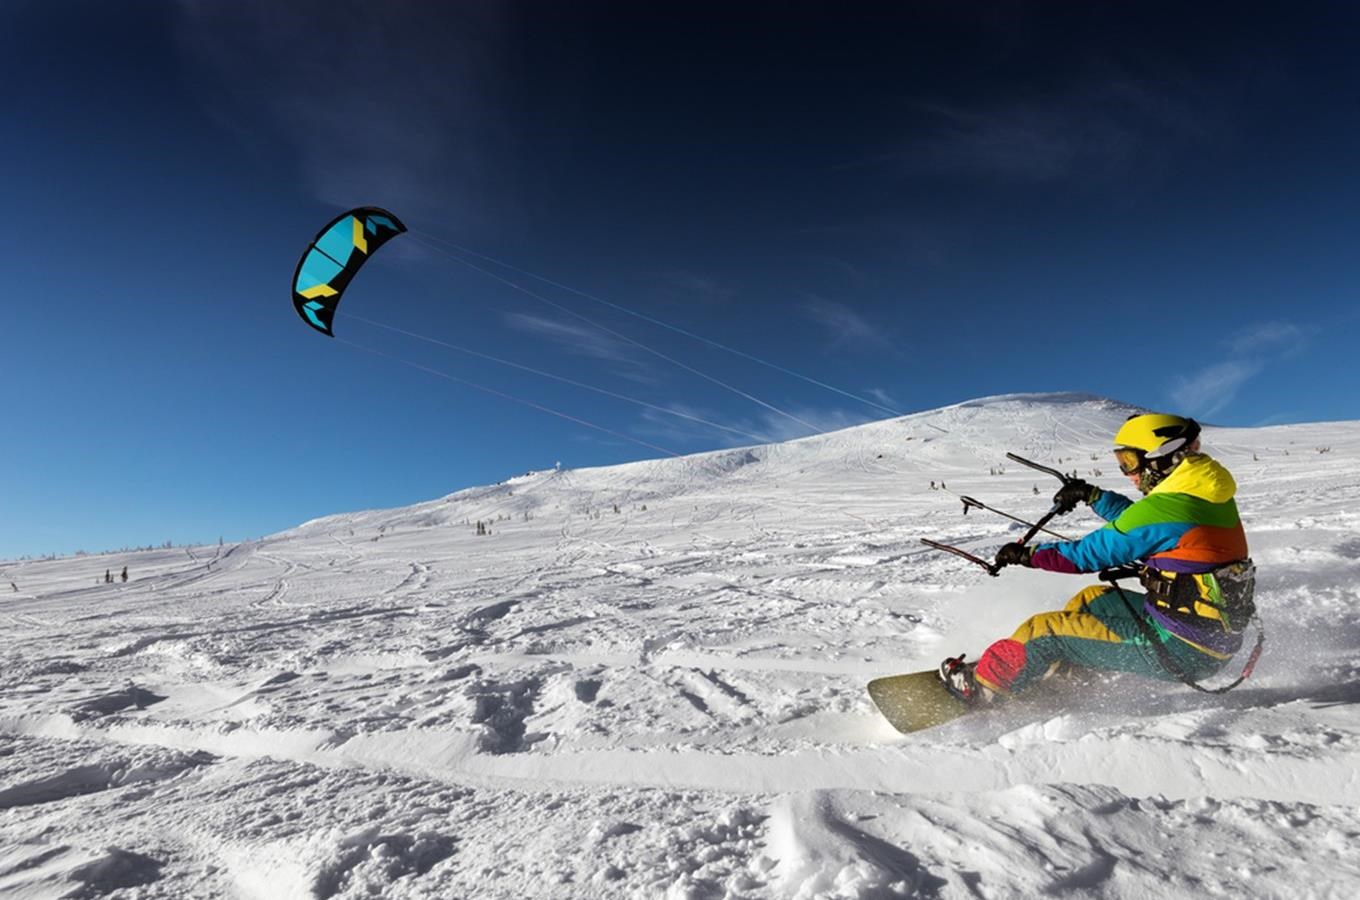 Půjčovna zimního vybavení Ski Surf Sport